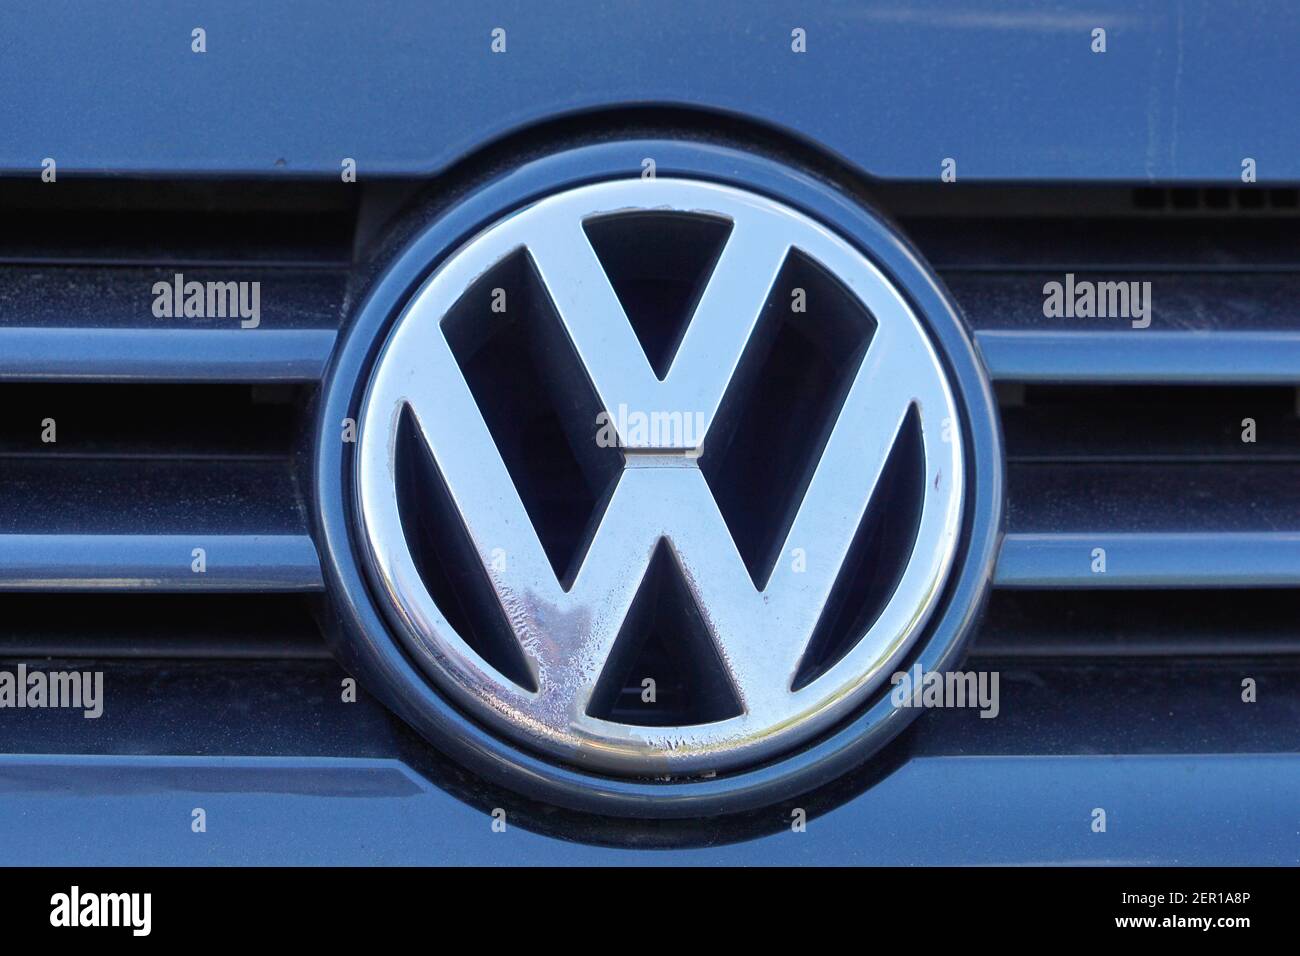 Belgrado, Serbia - 13 agosto 2016: La famosa VW Volkswagen firma il costruttore tedesco di automobili davanti al veicolo. Foto Stock